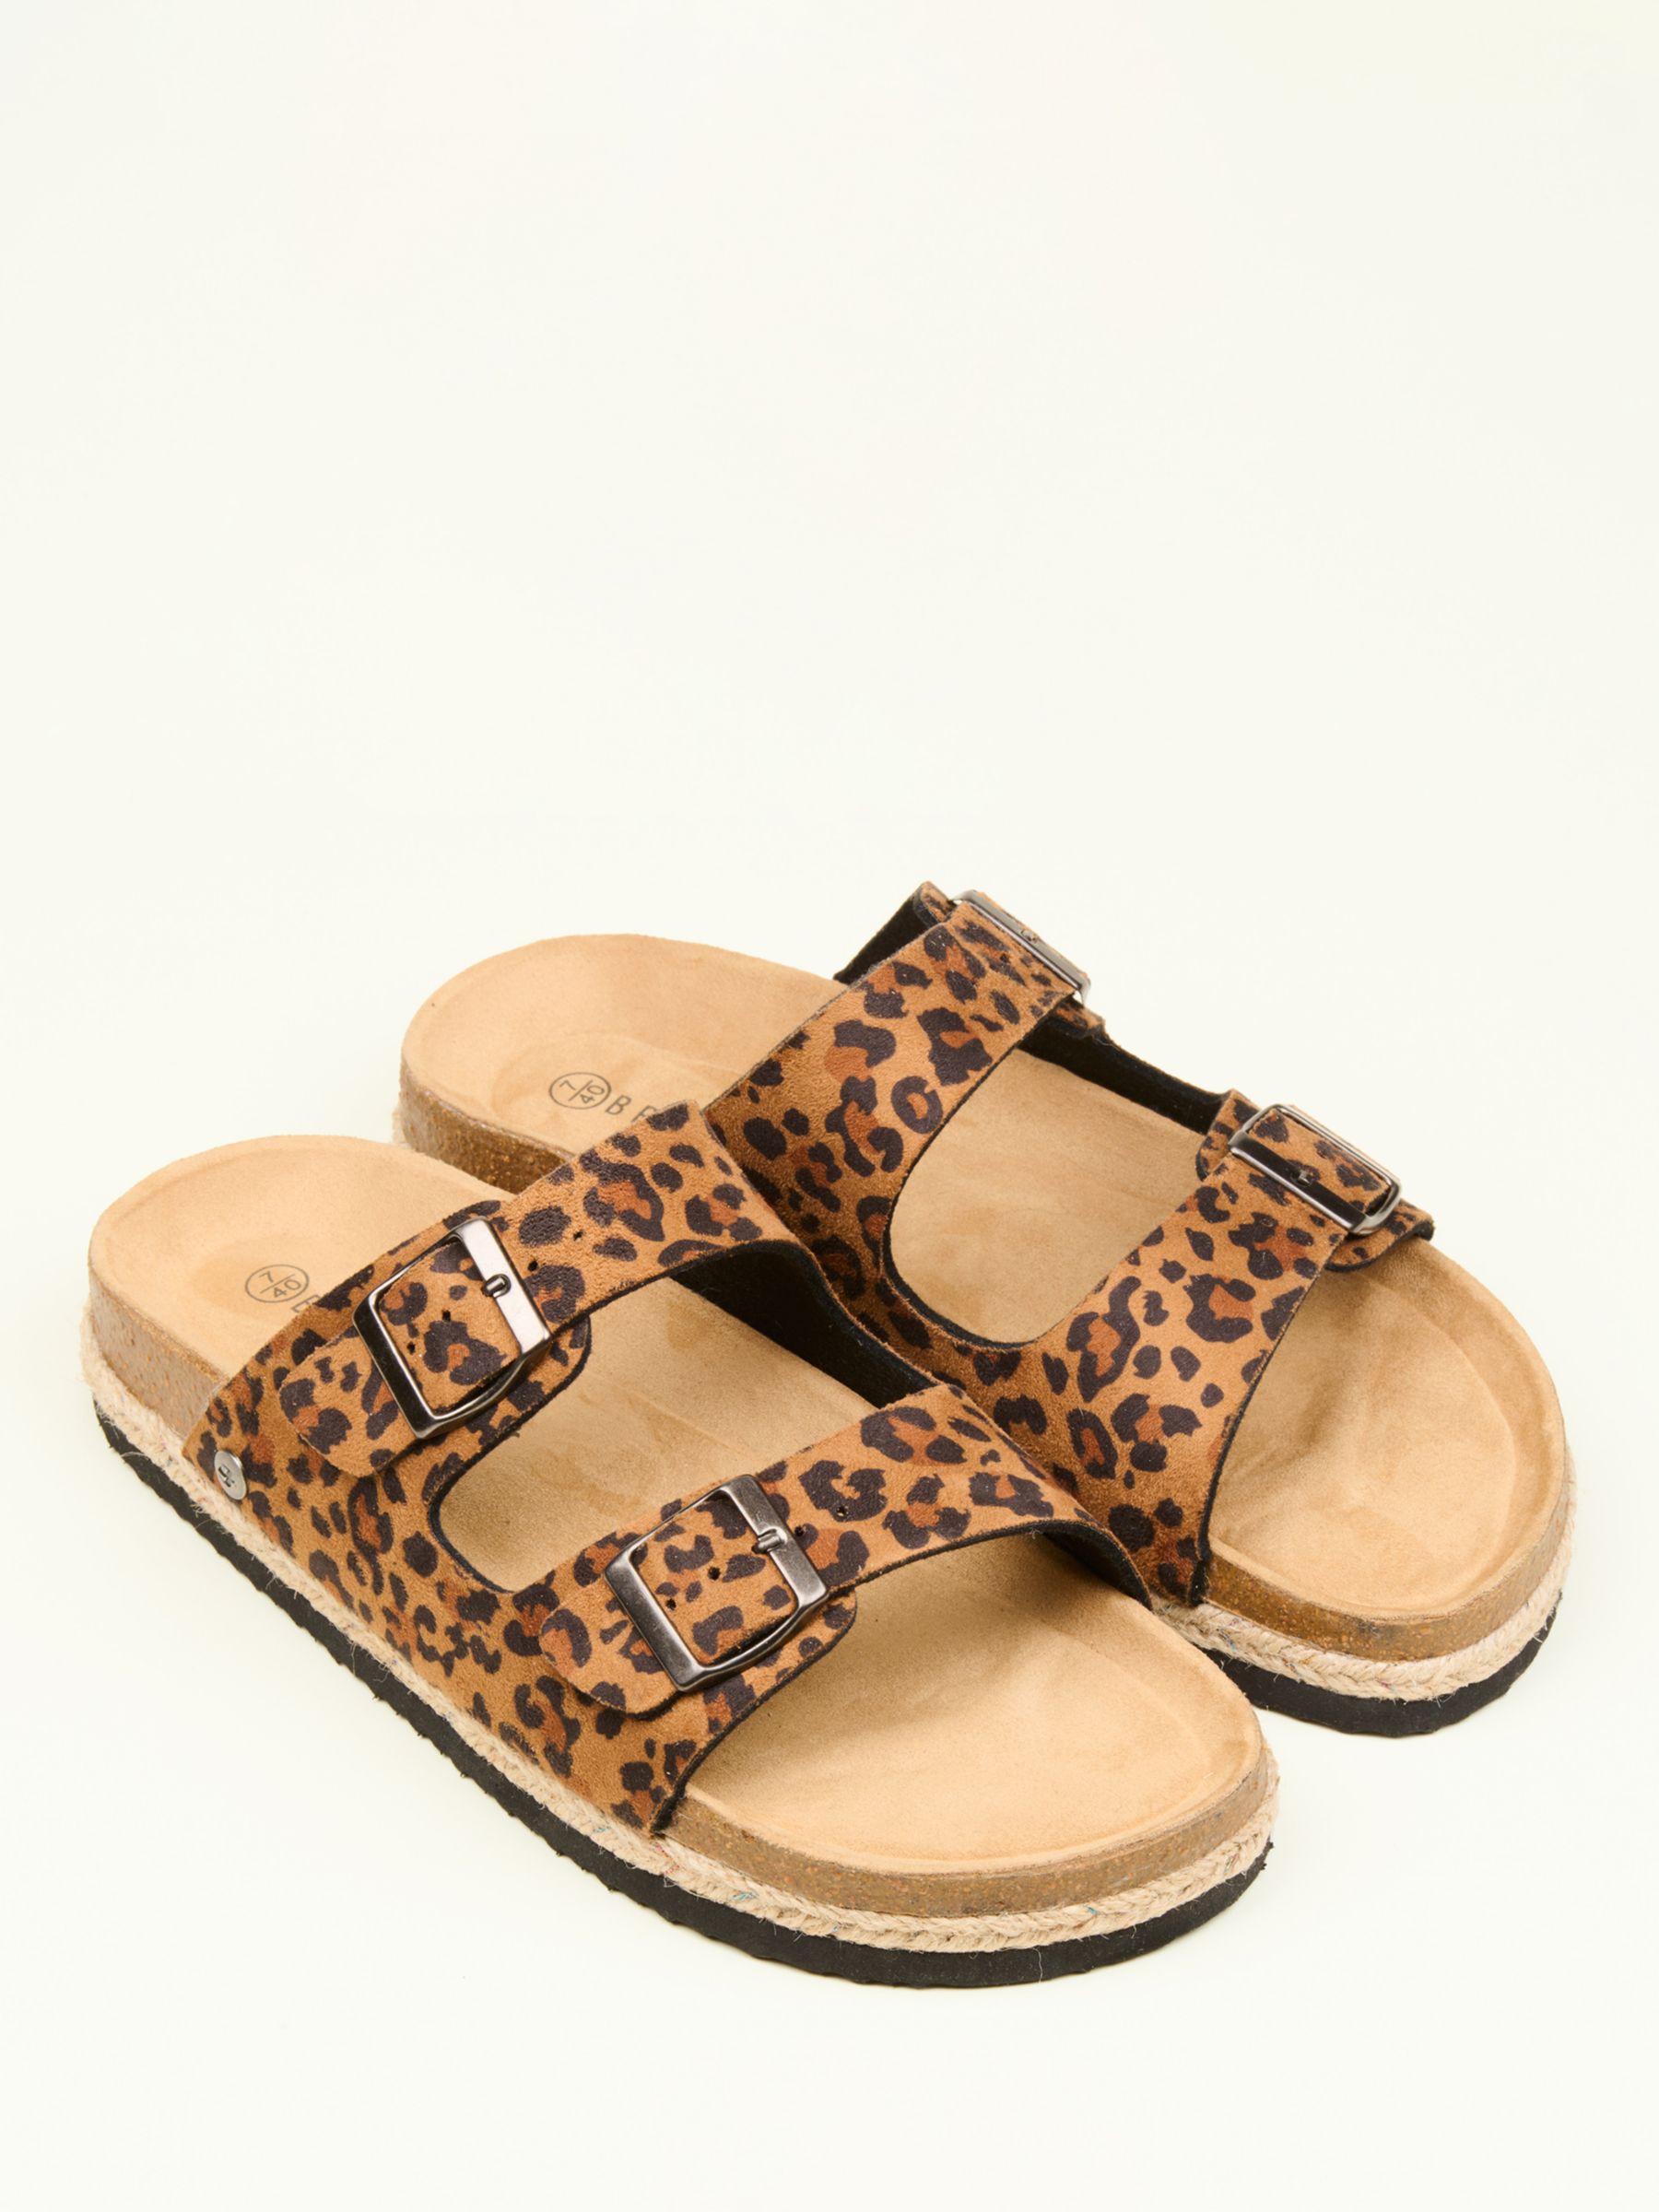 Buy Brakeburn Leopard Buckle Strap Sandals, Multi Online at johnlewis.com